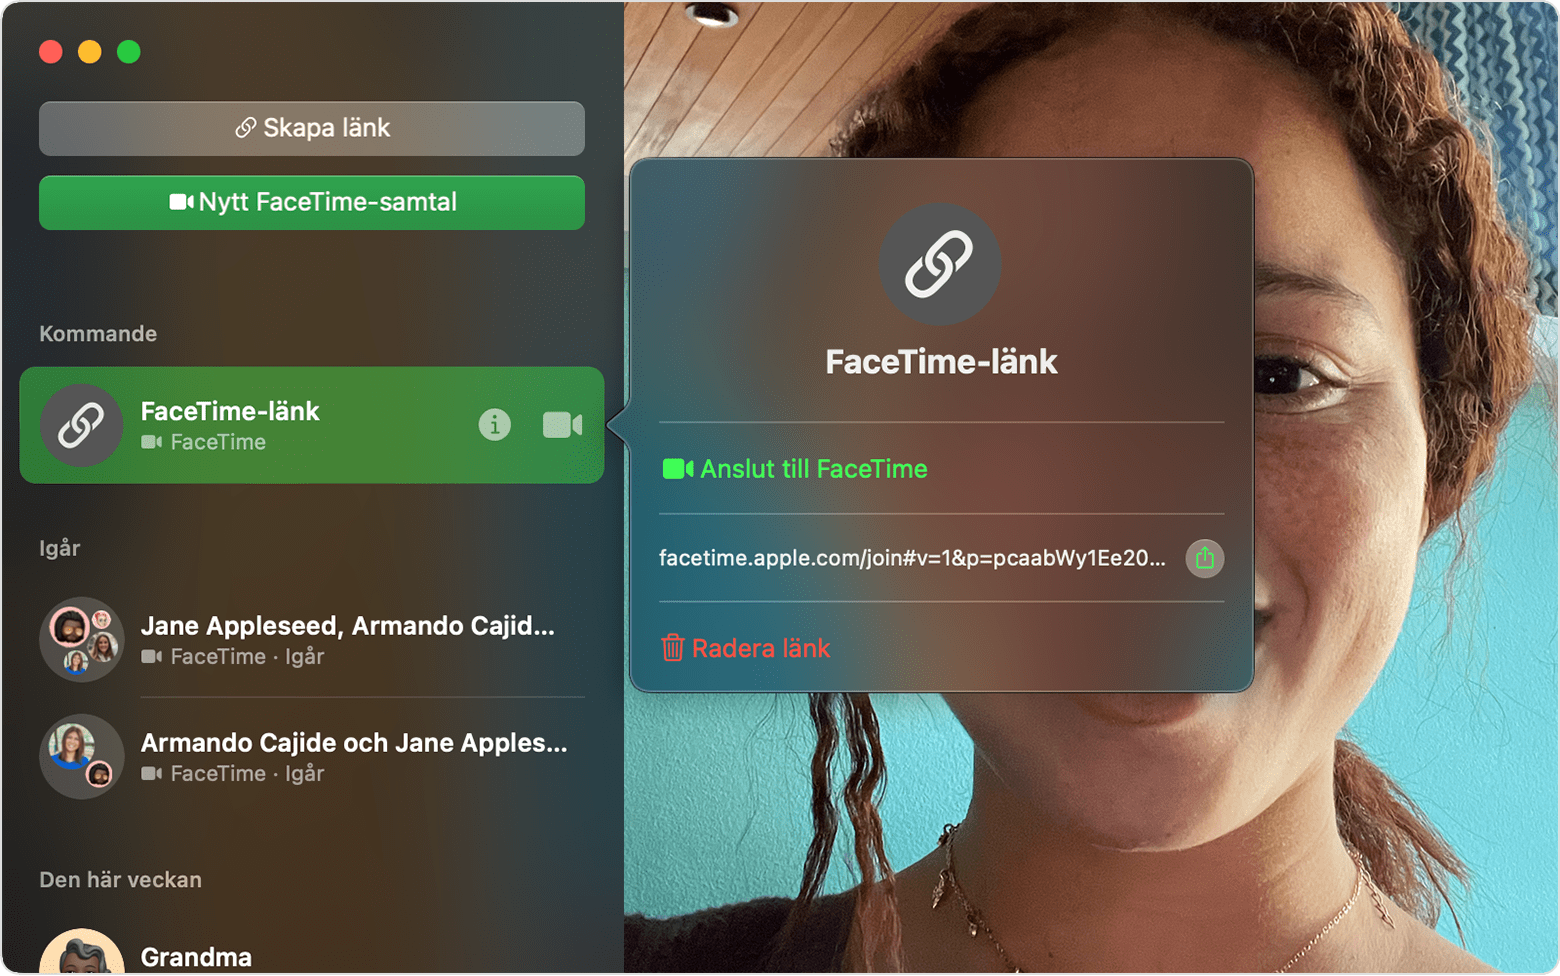 FaceTime-fönster med aktiverad Infoknapp bredvid FaceTime-länk